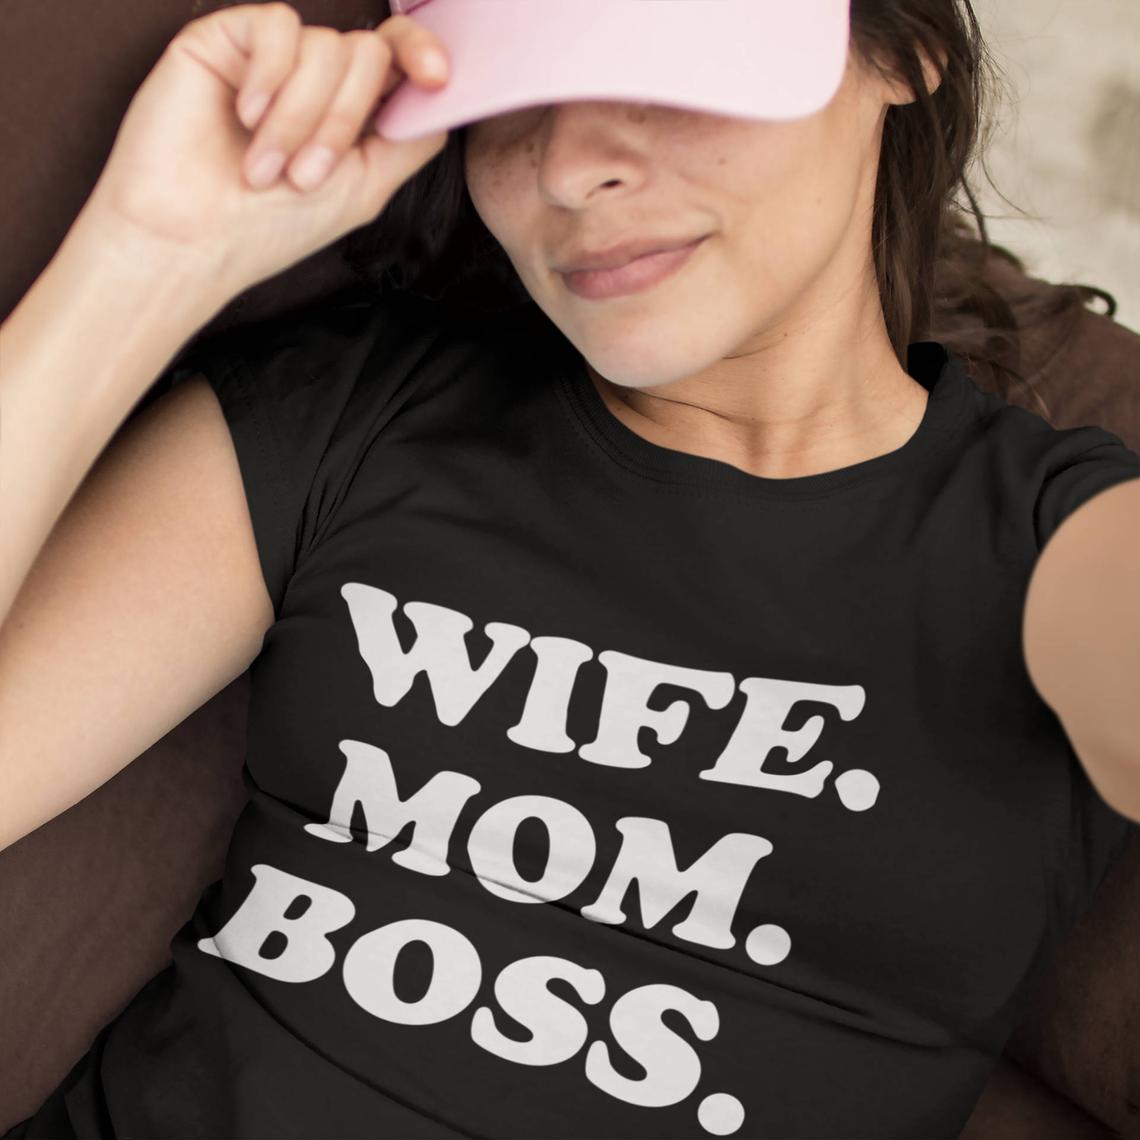 Тениска за майка - Wife Mom Boss